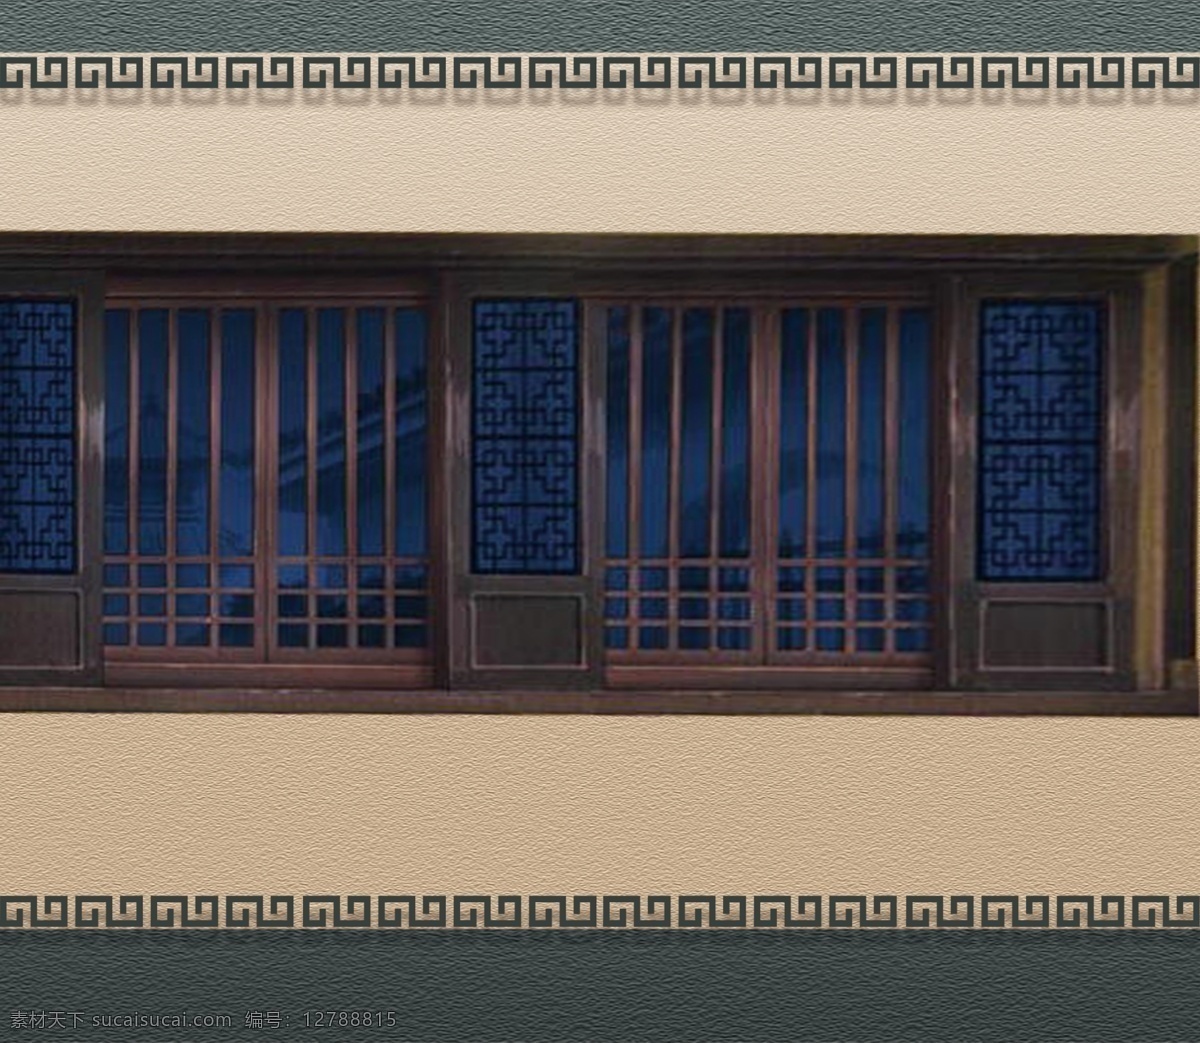 墙壁装饰 分层 古典 古代 木窗户 木窗 仿古 穿越 中国花纹 花纹 纹理 中式 中式墙壁 普通配图 环境设计 展览设计